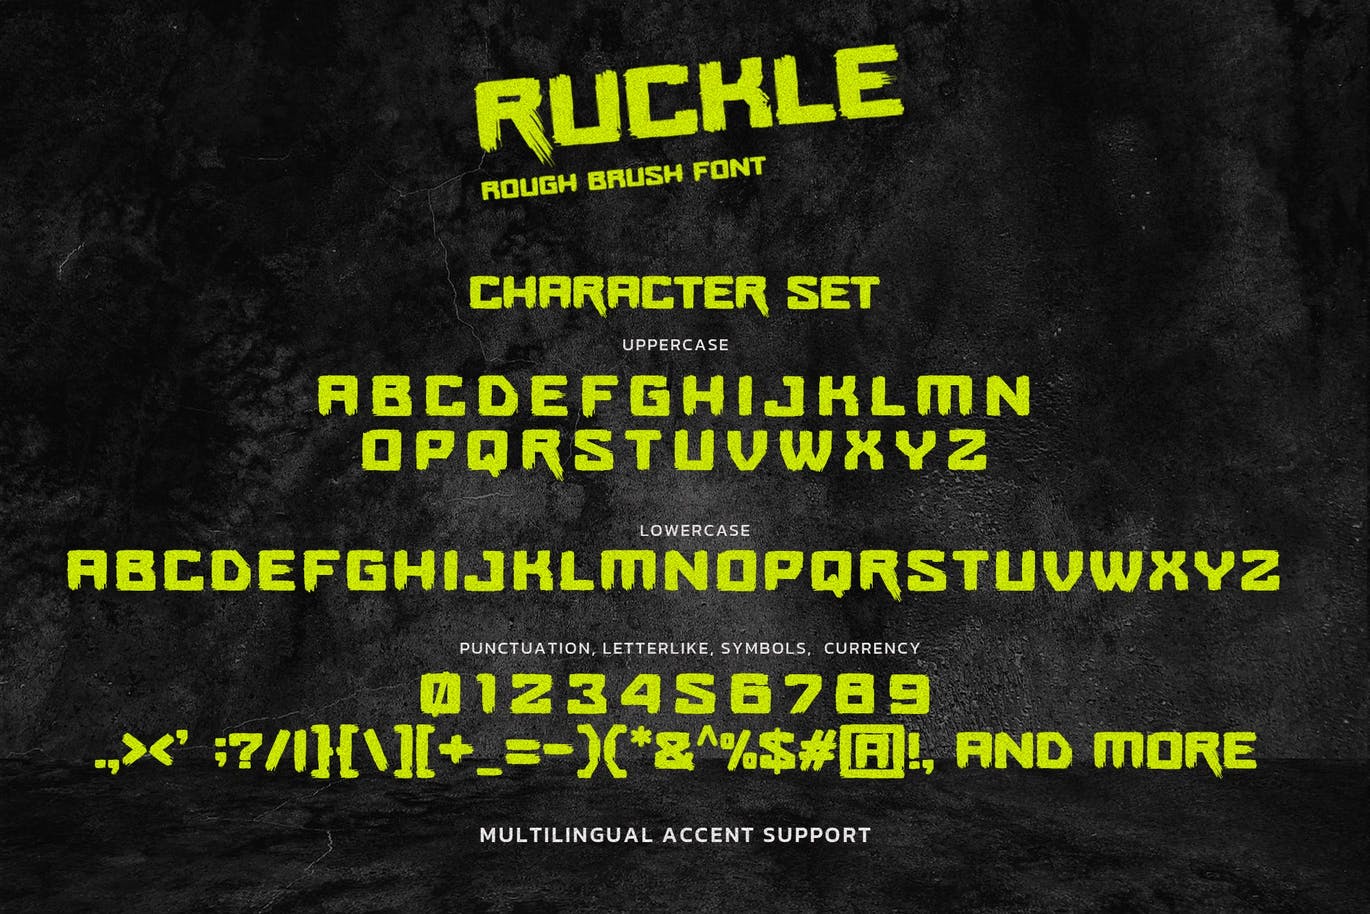 质感自然的粗体笔刷字体素材 RUCKLE – Rough Brush Font 设计素材 第4张